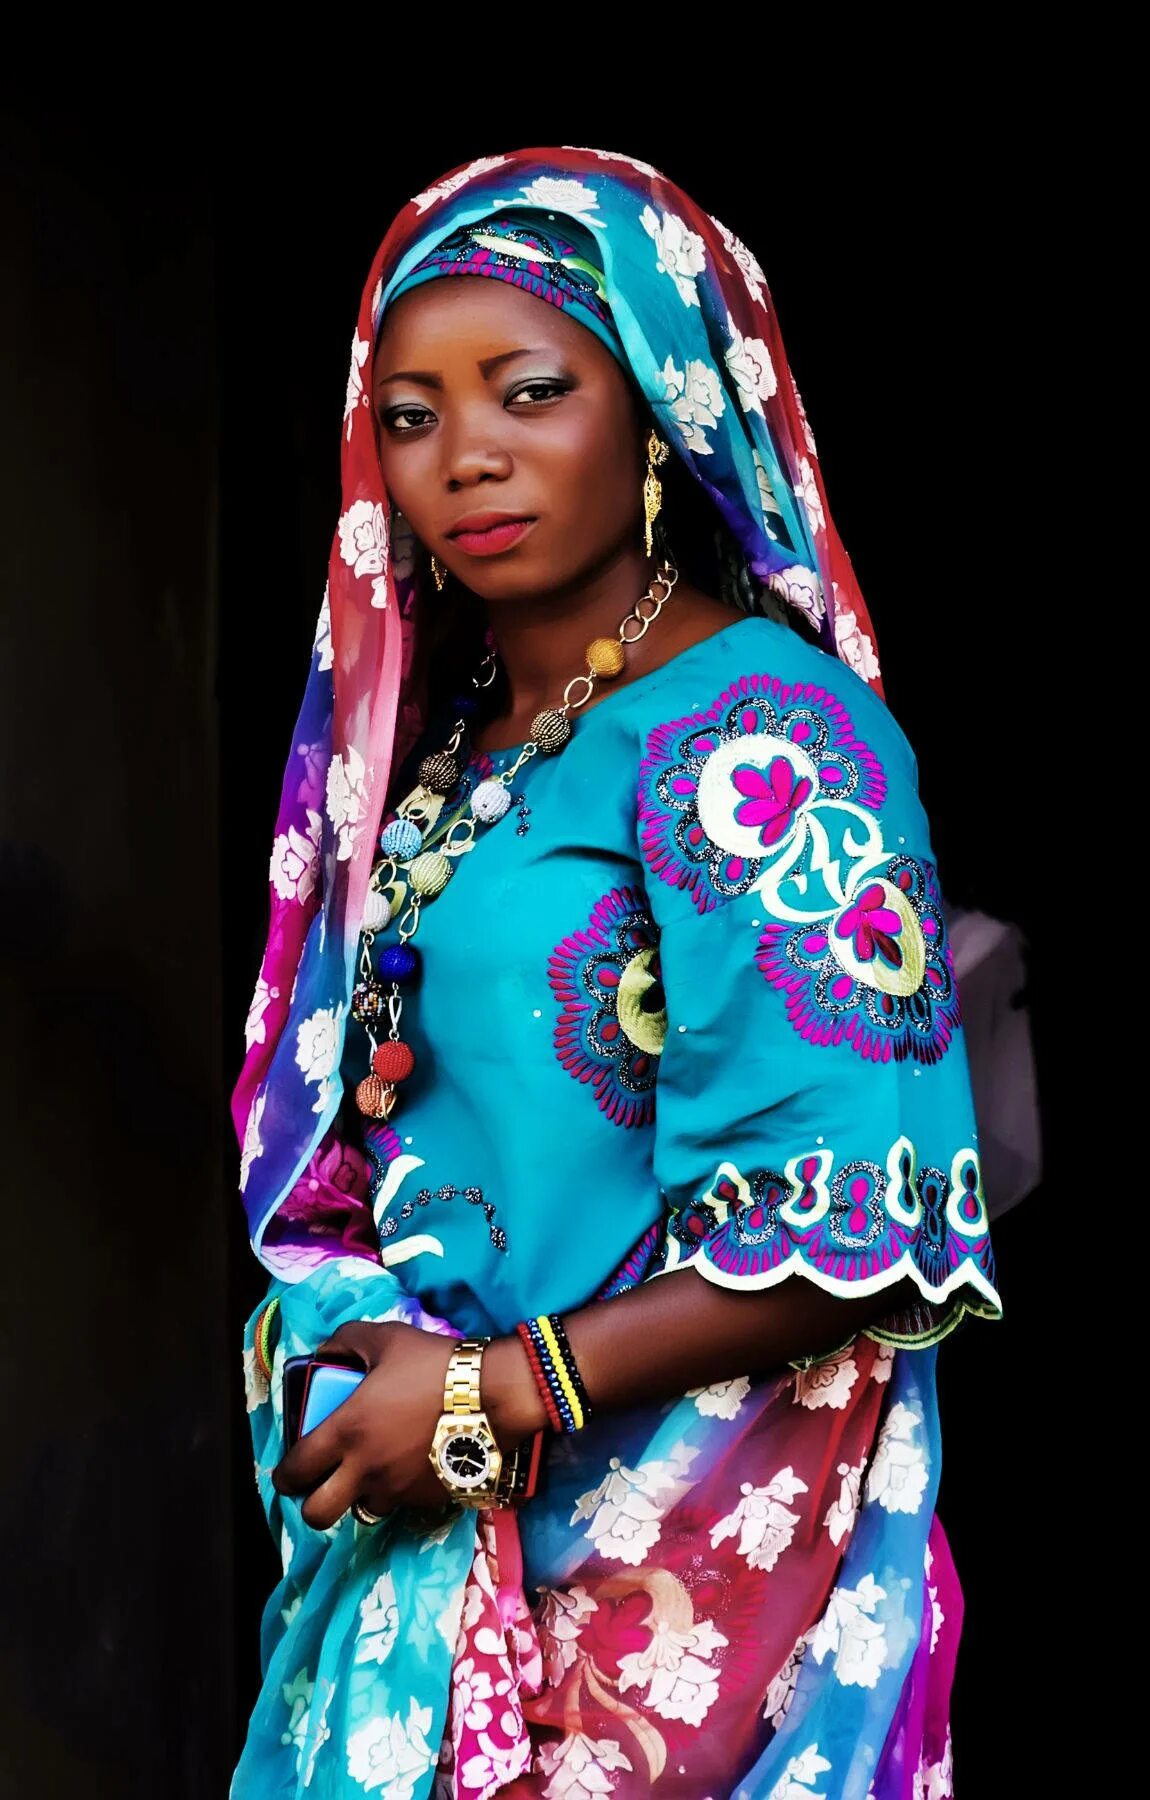 Africa women. Африканские женщины. Женщины Нигерии. Красавицы Африки. Негритянка в национальной одежде.